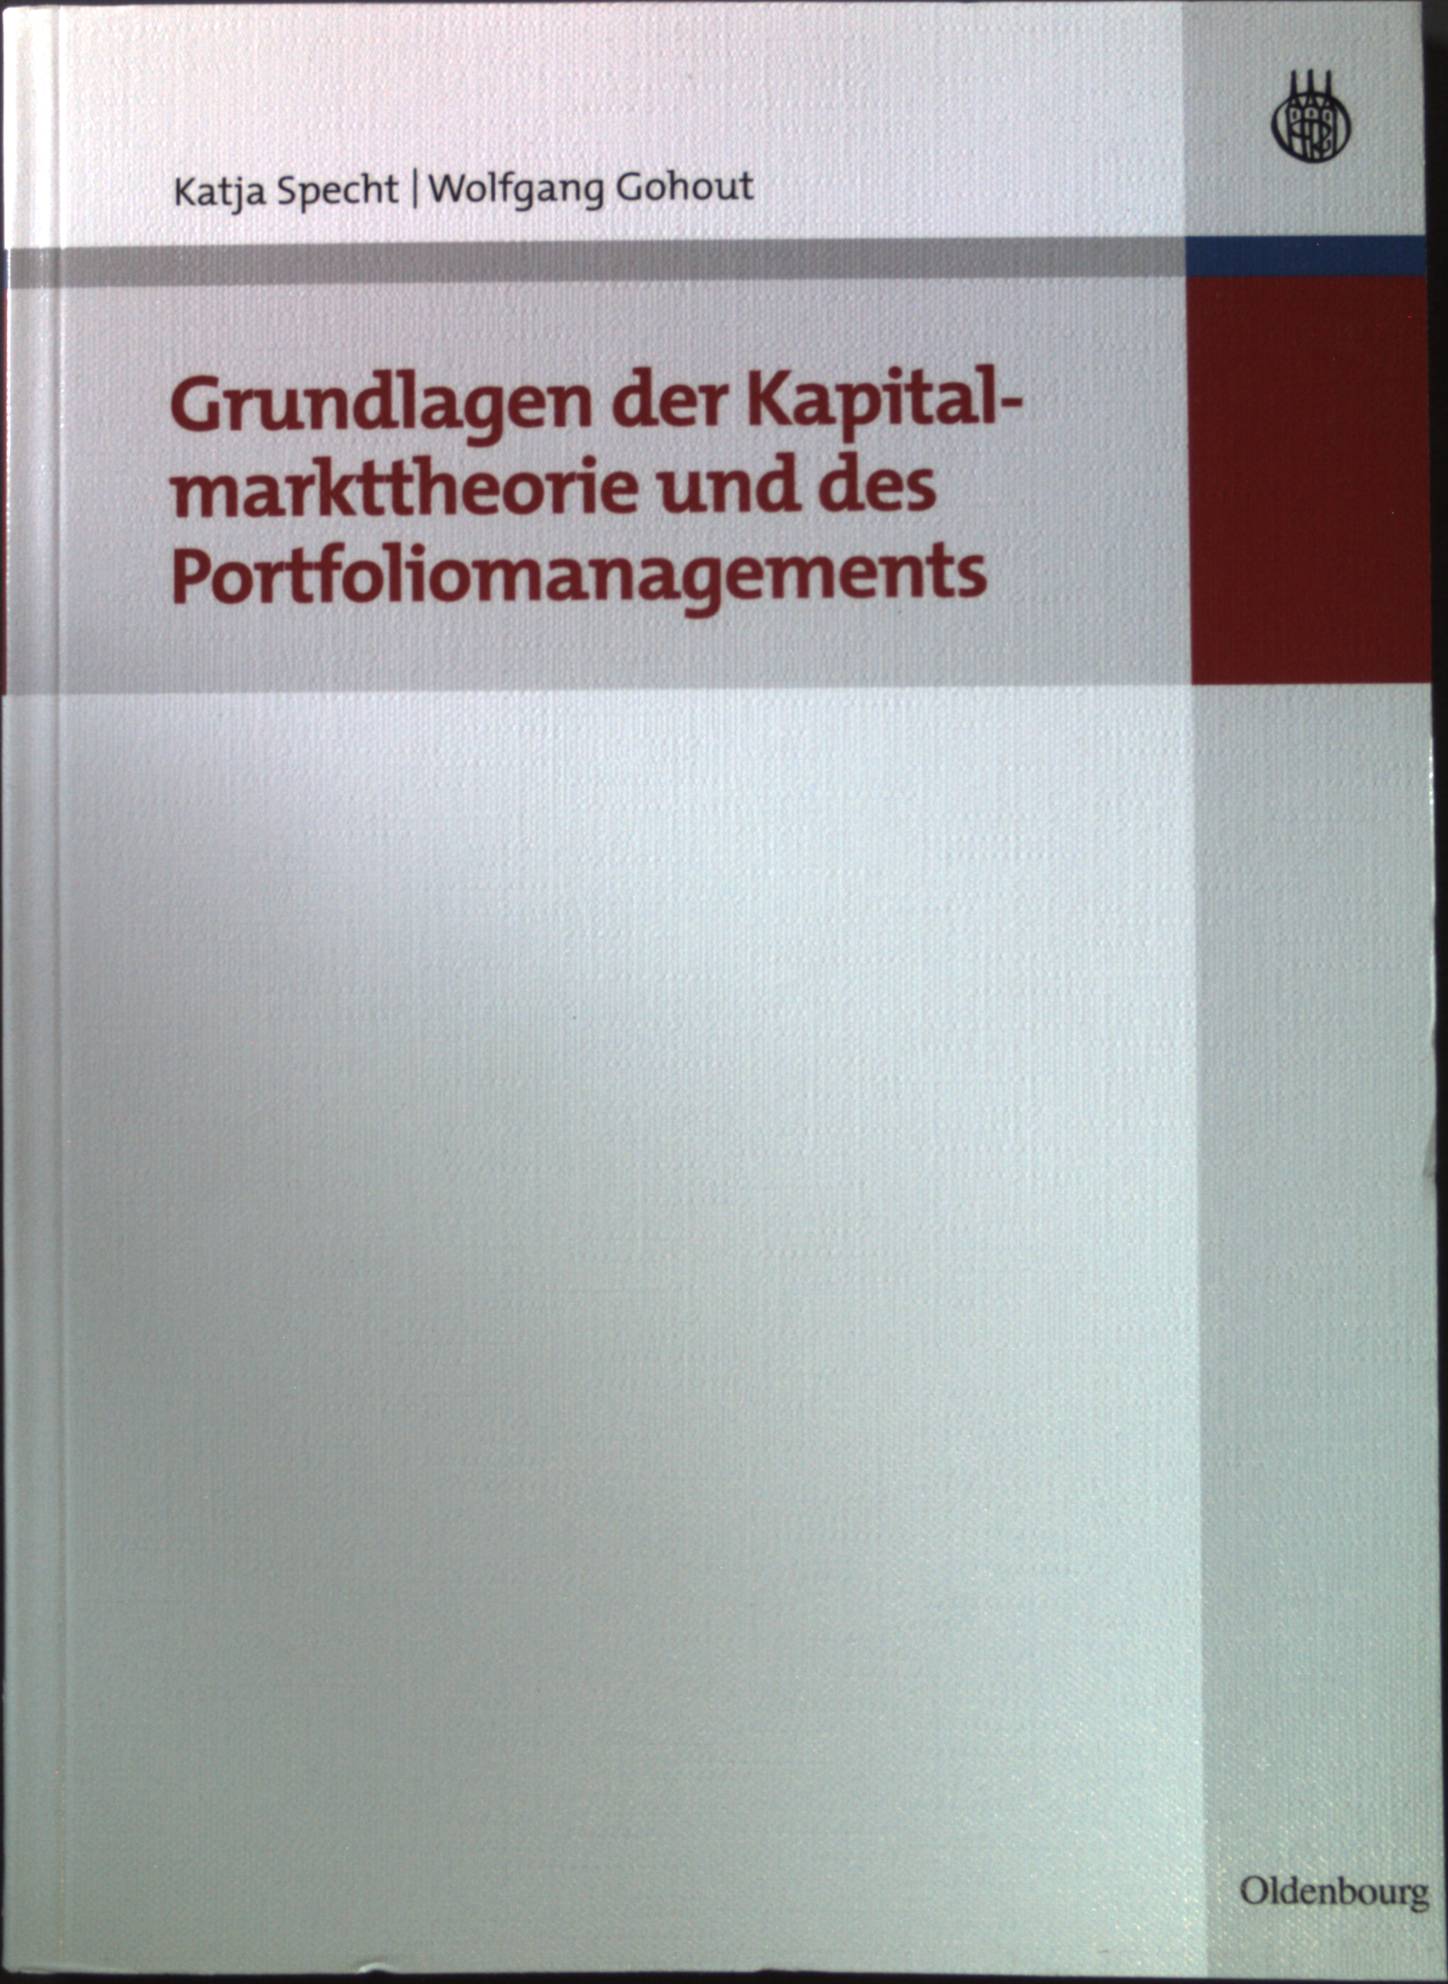 Grundlagen der Kapitalmarkttheorie und des Portfoliomanagements. - Specht, Katja und Wolfgang Gohout